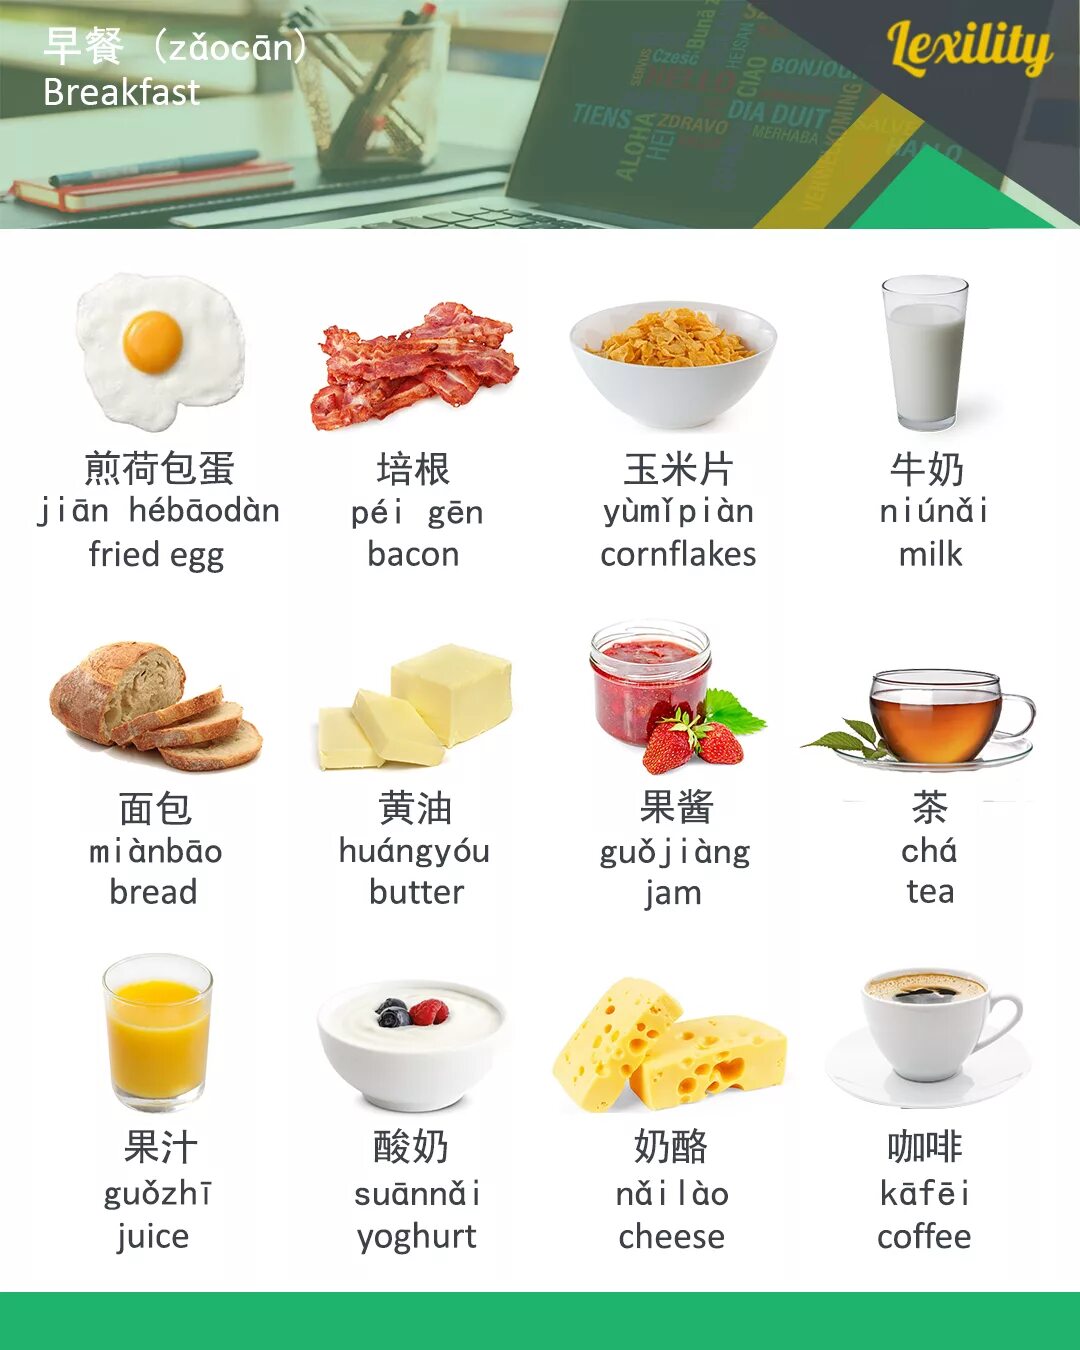 Завтрак по английскому языку. Продукты на завтрак на английском. Еда для завтрака на английском языке. Завтраки на английском языке с переводом.